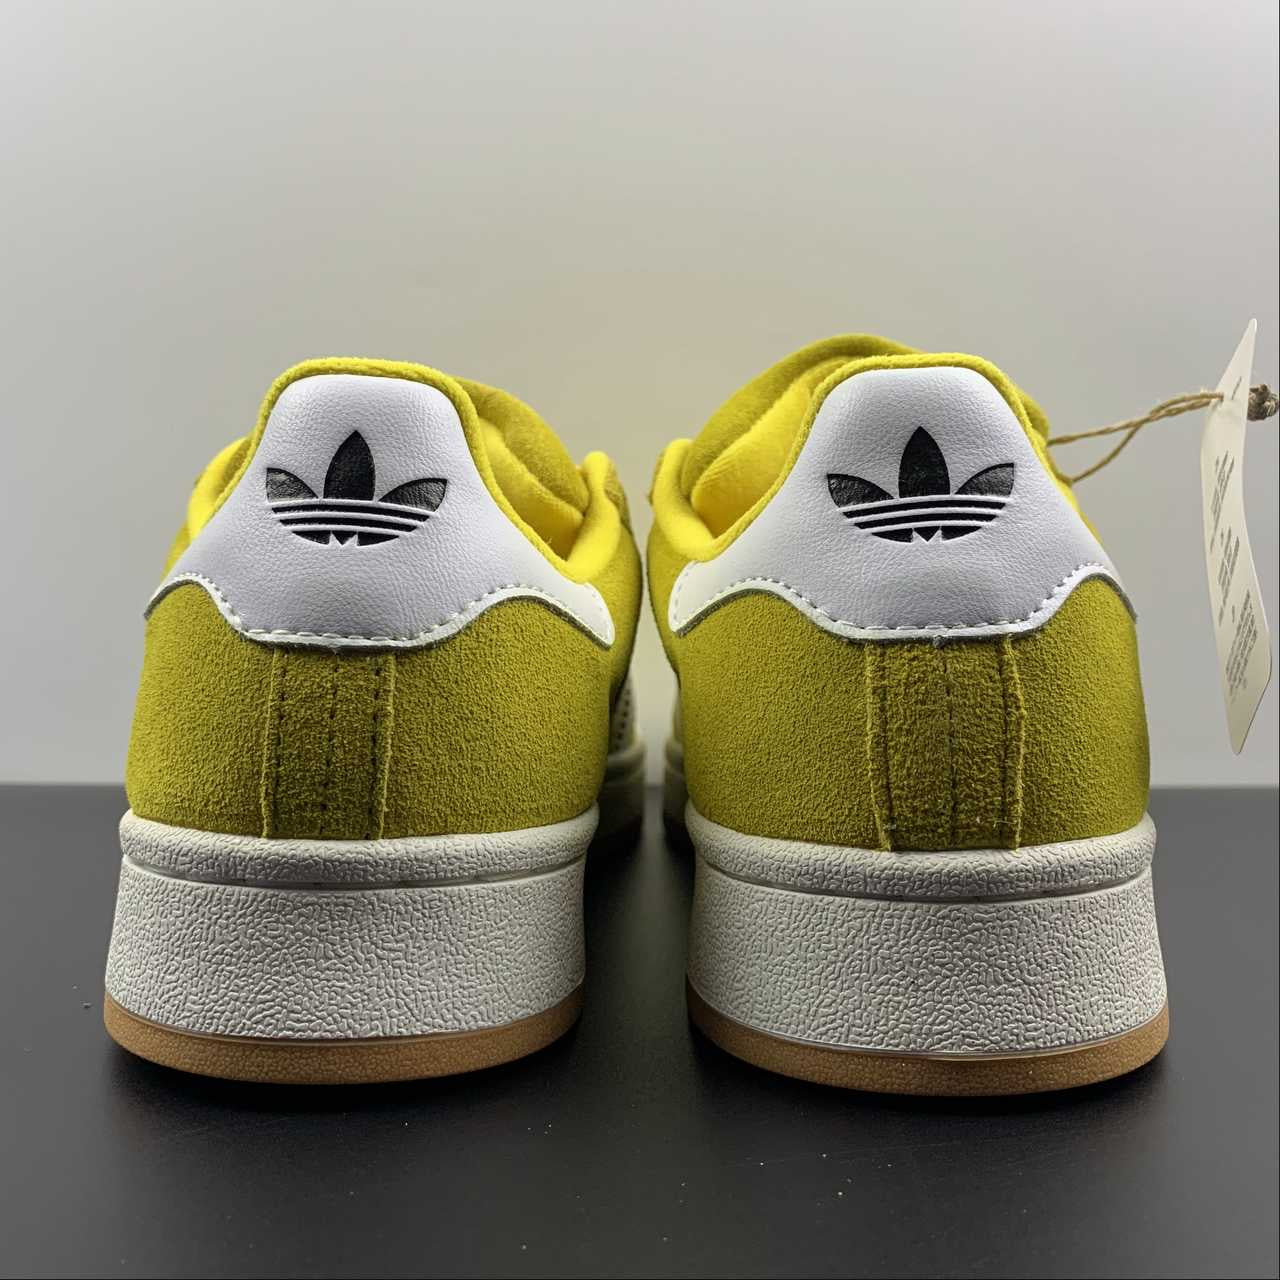 Adidas campus chaussures jaunes